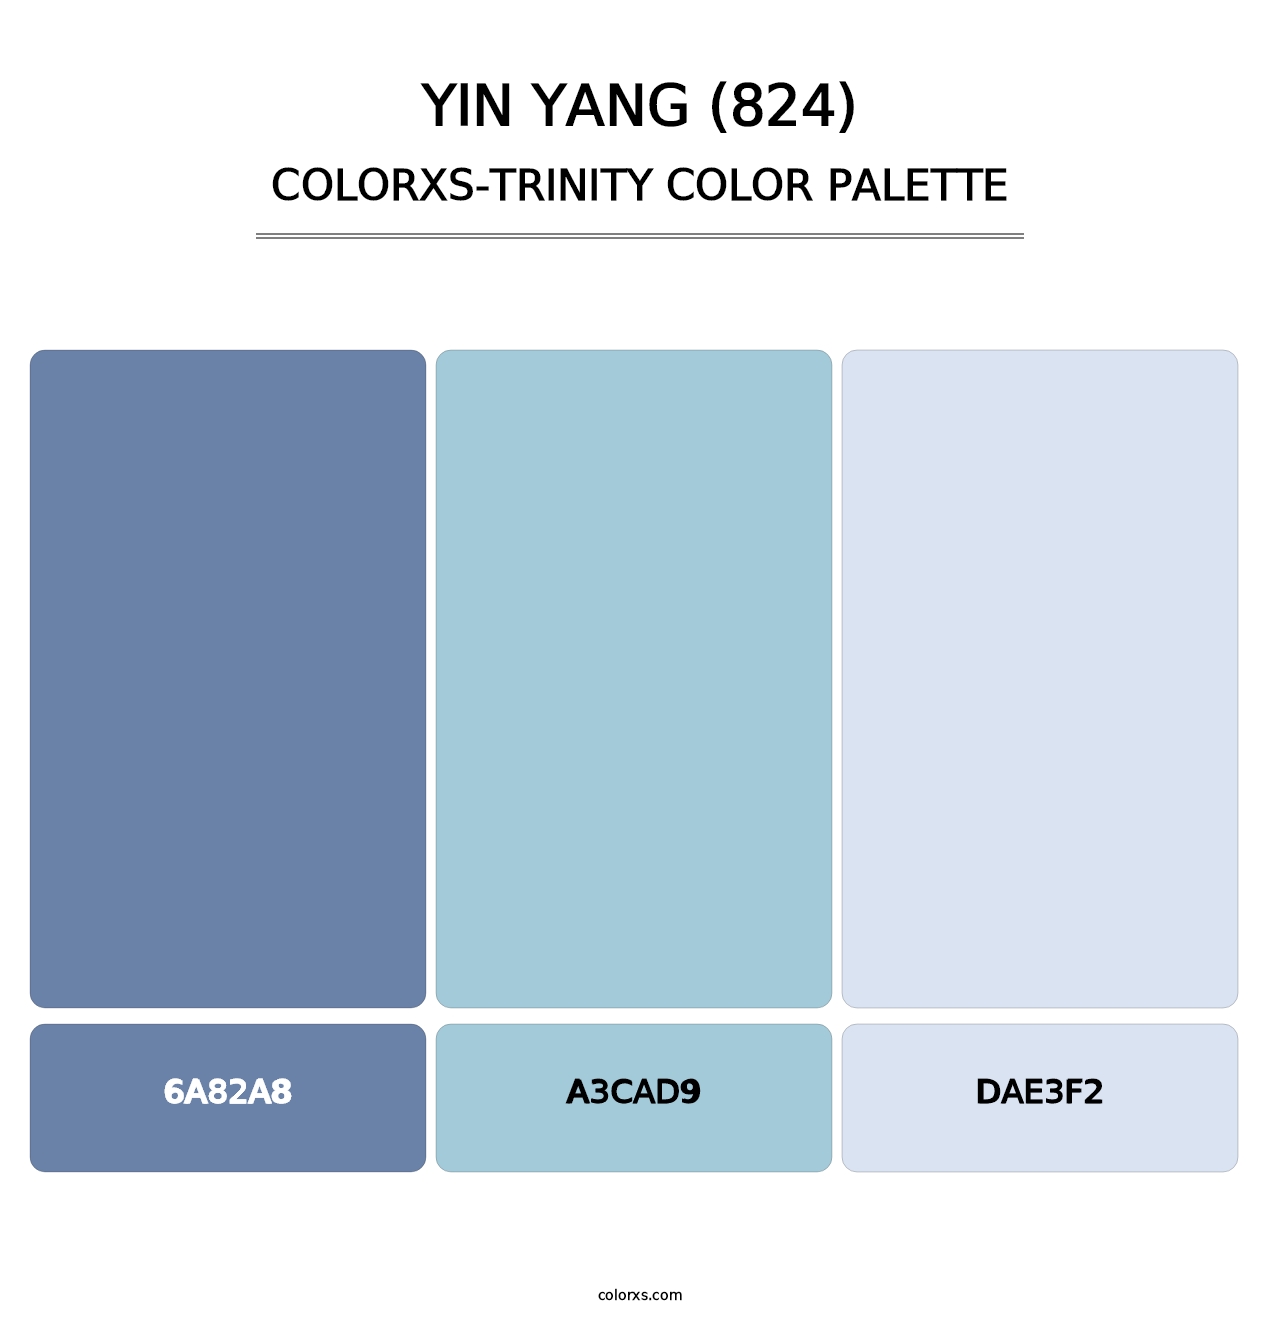 Yin Yang (824) - Colorxs Trinity Palette